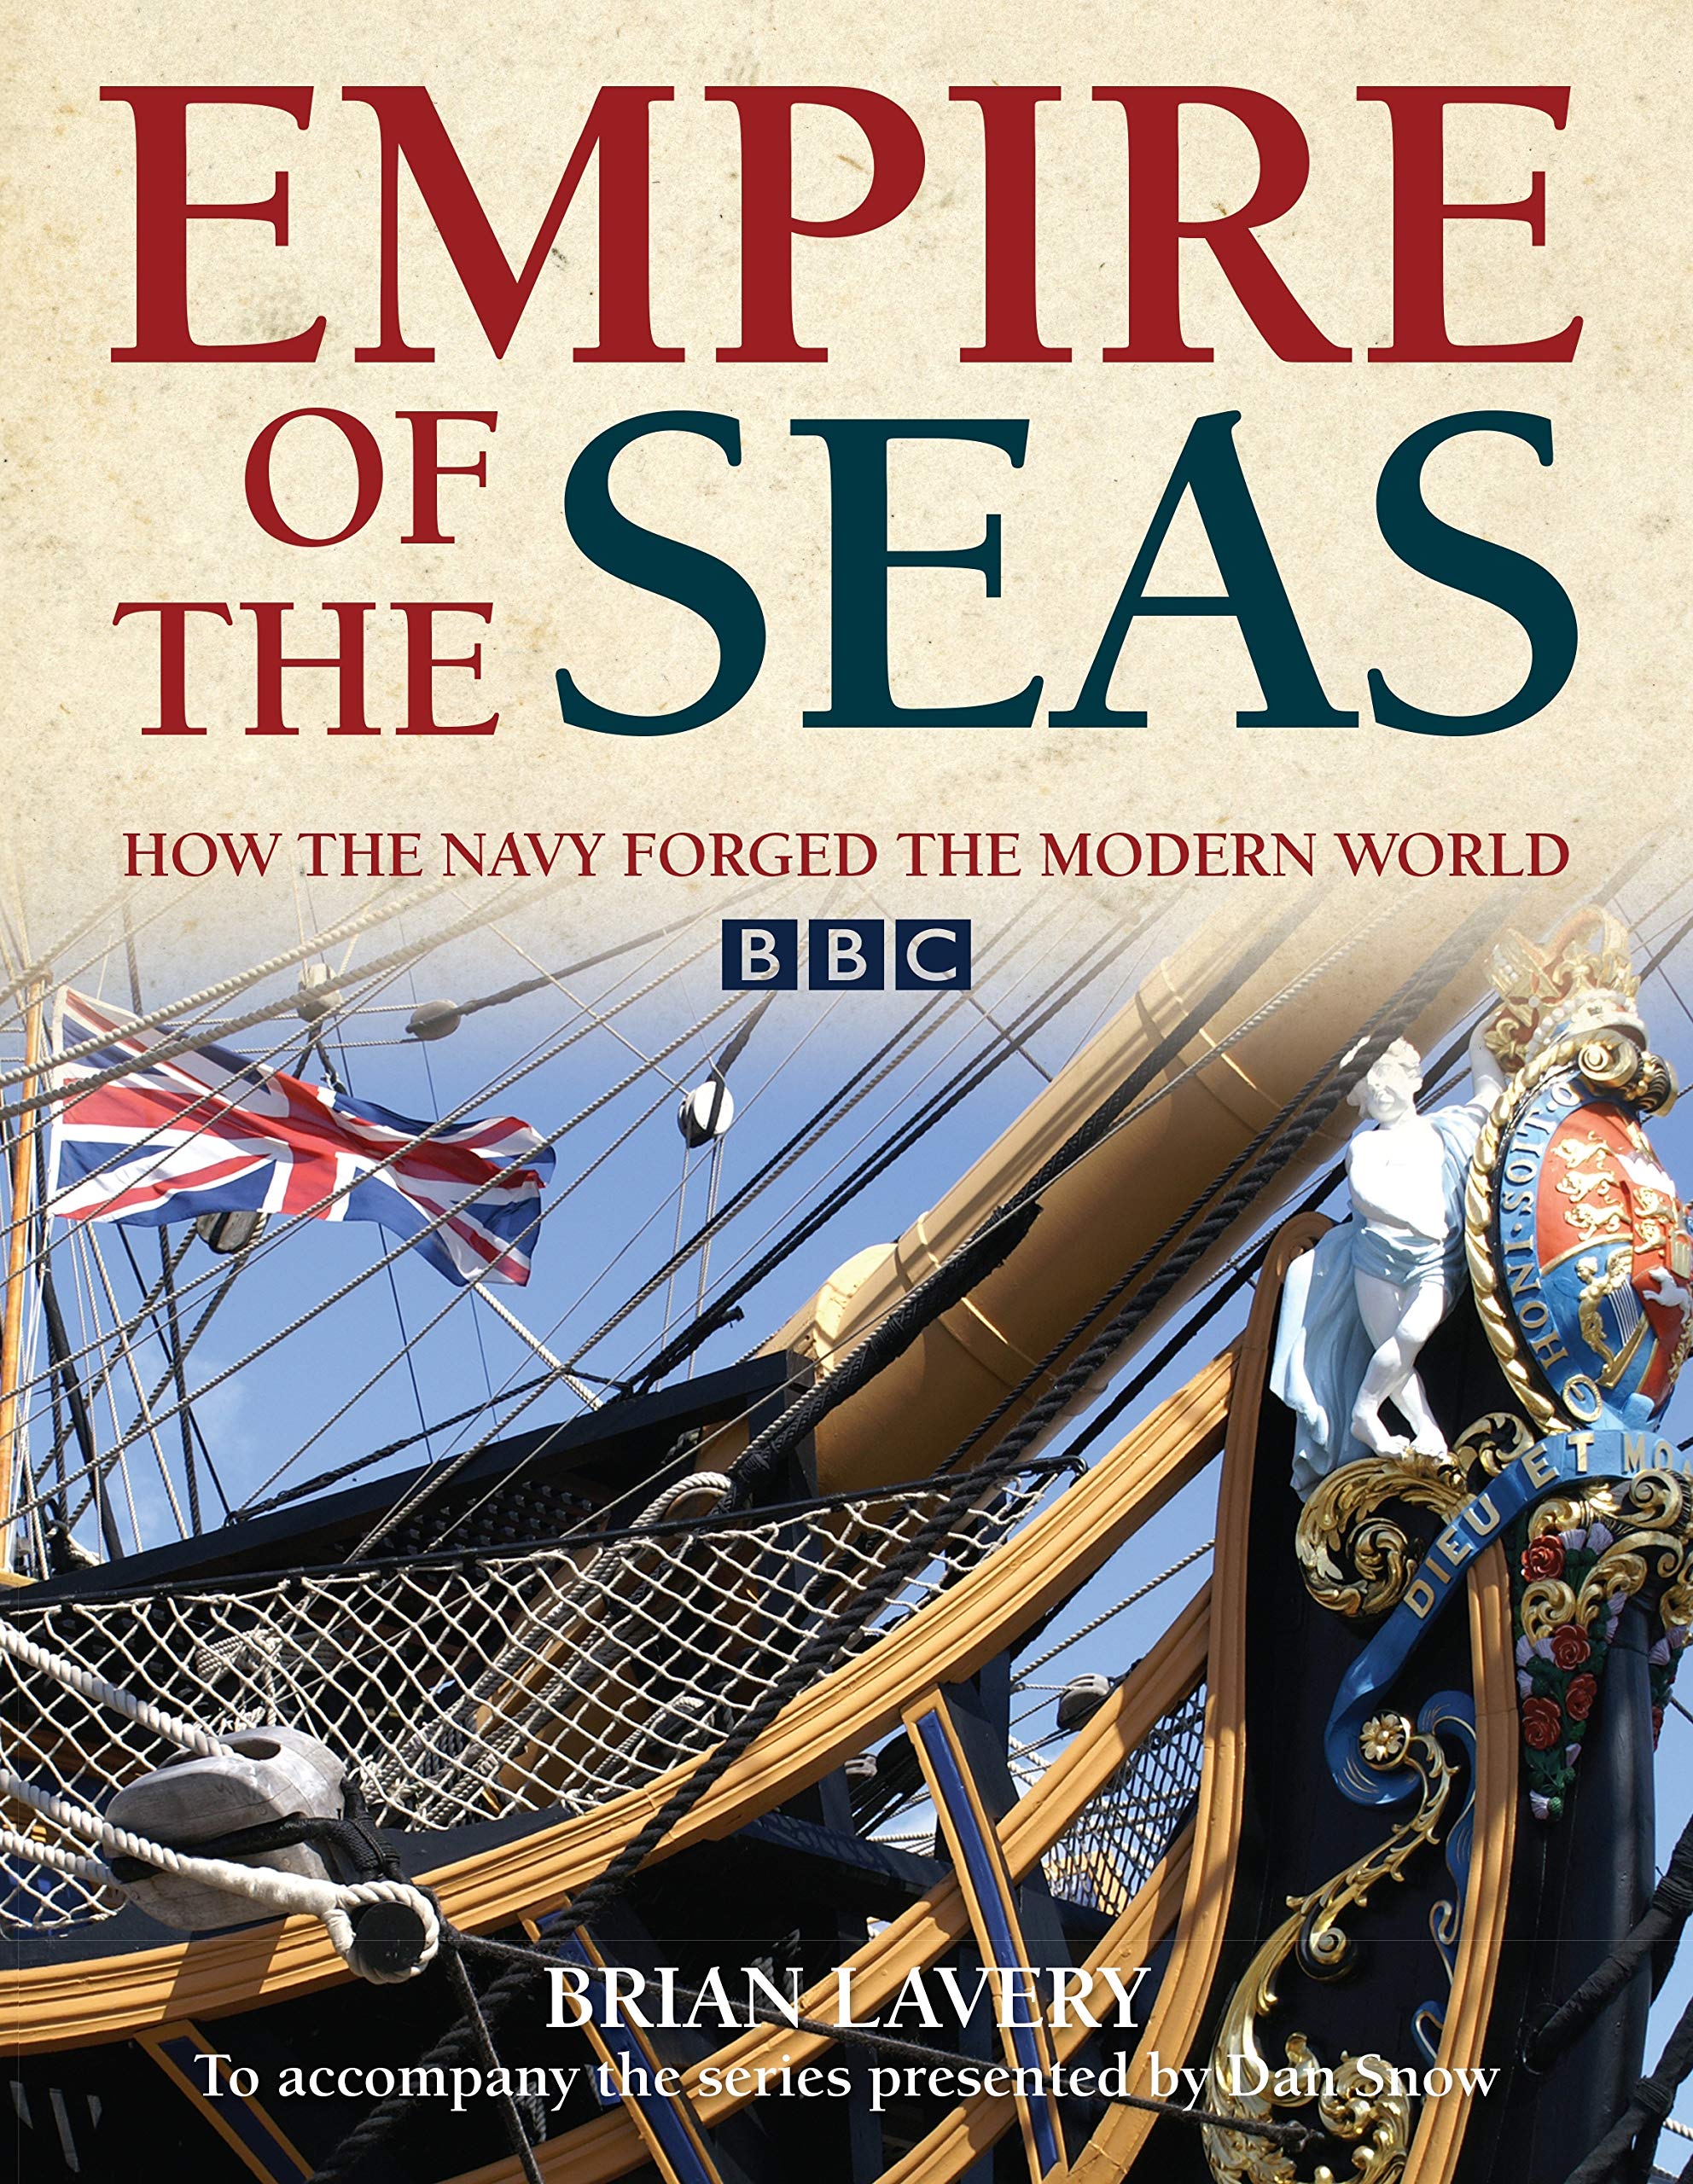  Empire of the Seas (Englisch) Taschenbuch – 8. Januar 2019